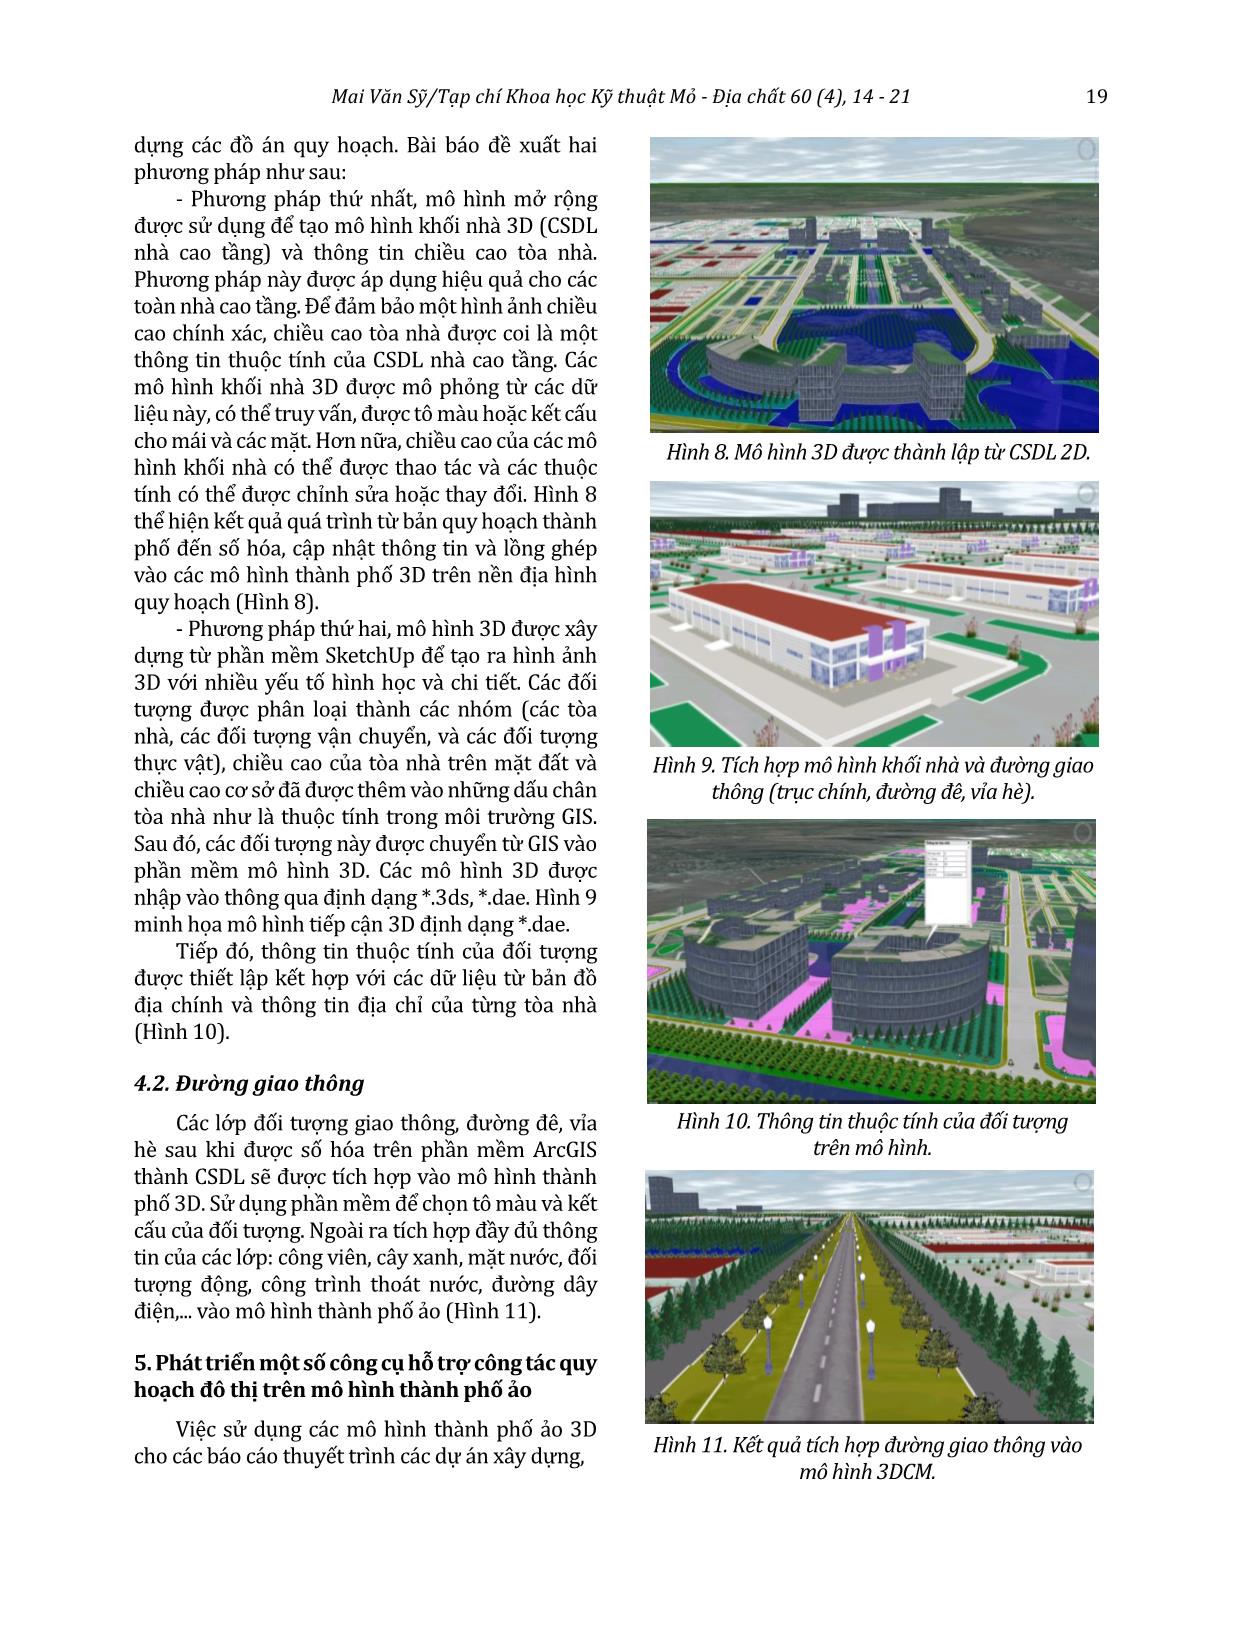 Ứng dụng mô hình thành phố ảo trong quy hoạch và quản lý đô thị tại khu công nghiệp Kiến Thụy - Hải Phòng trang 6